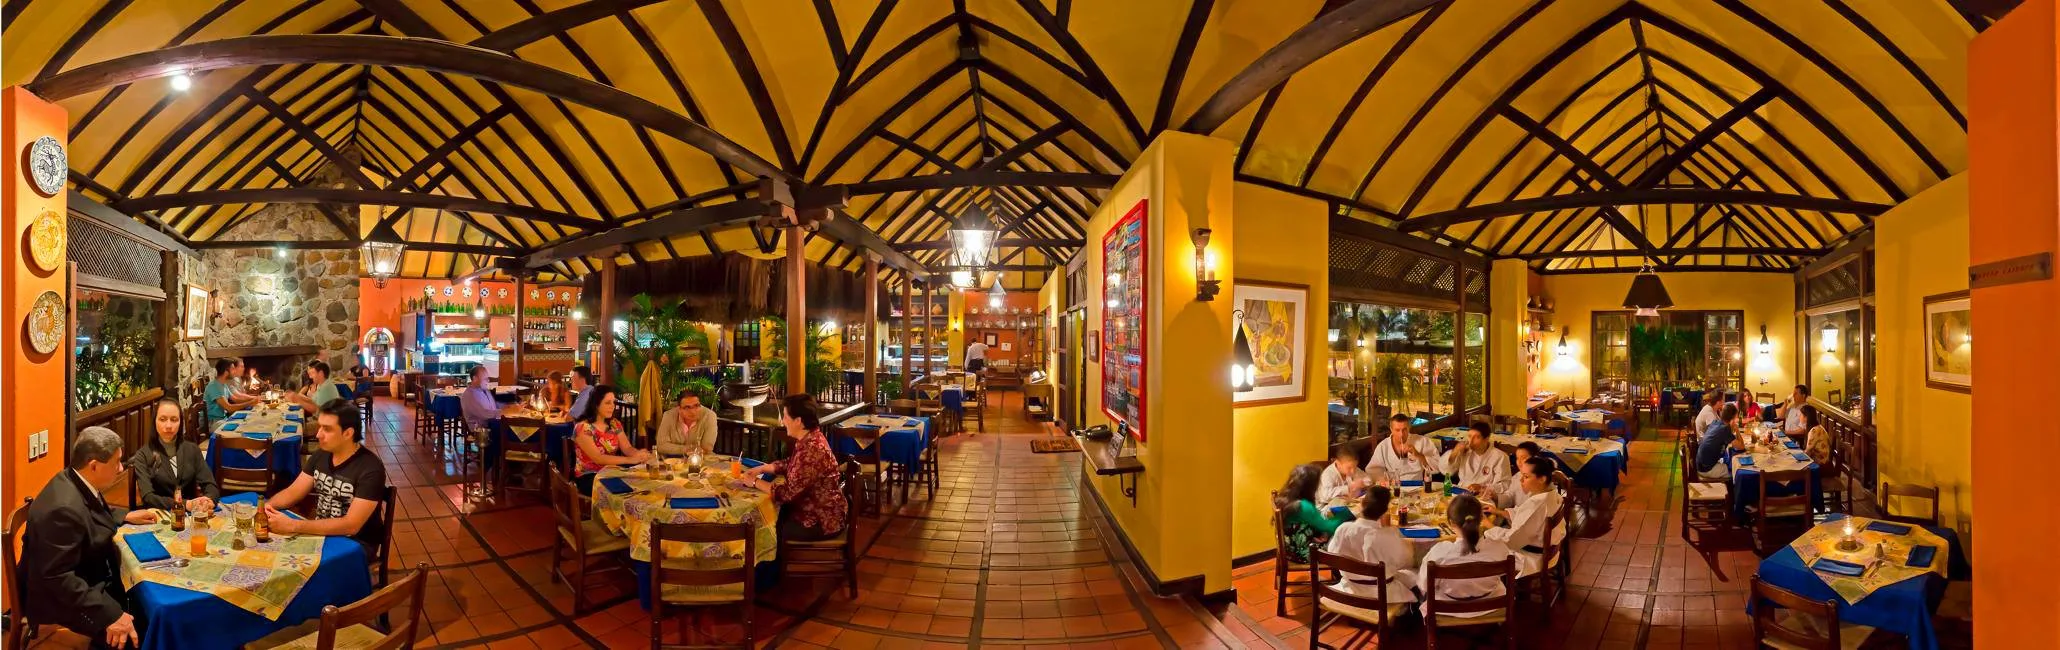 Restaurants in Medellin, best restaurants in Medellin, where to eat in Medellin, restaurants in Medellin colombia, restaurants Medellin, Medellin food, best Medellin restaurants, hatoviejo restaurant